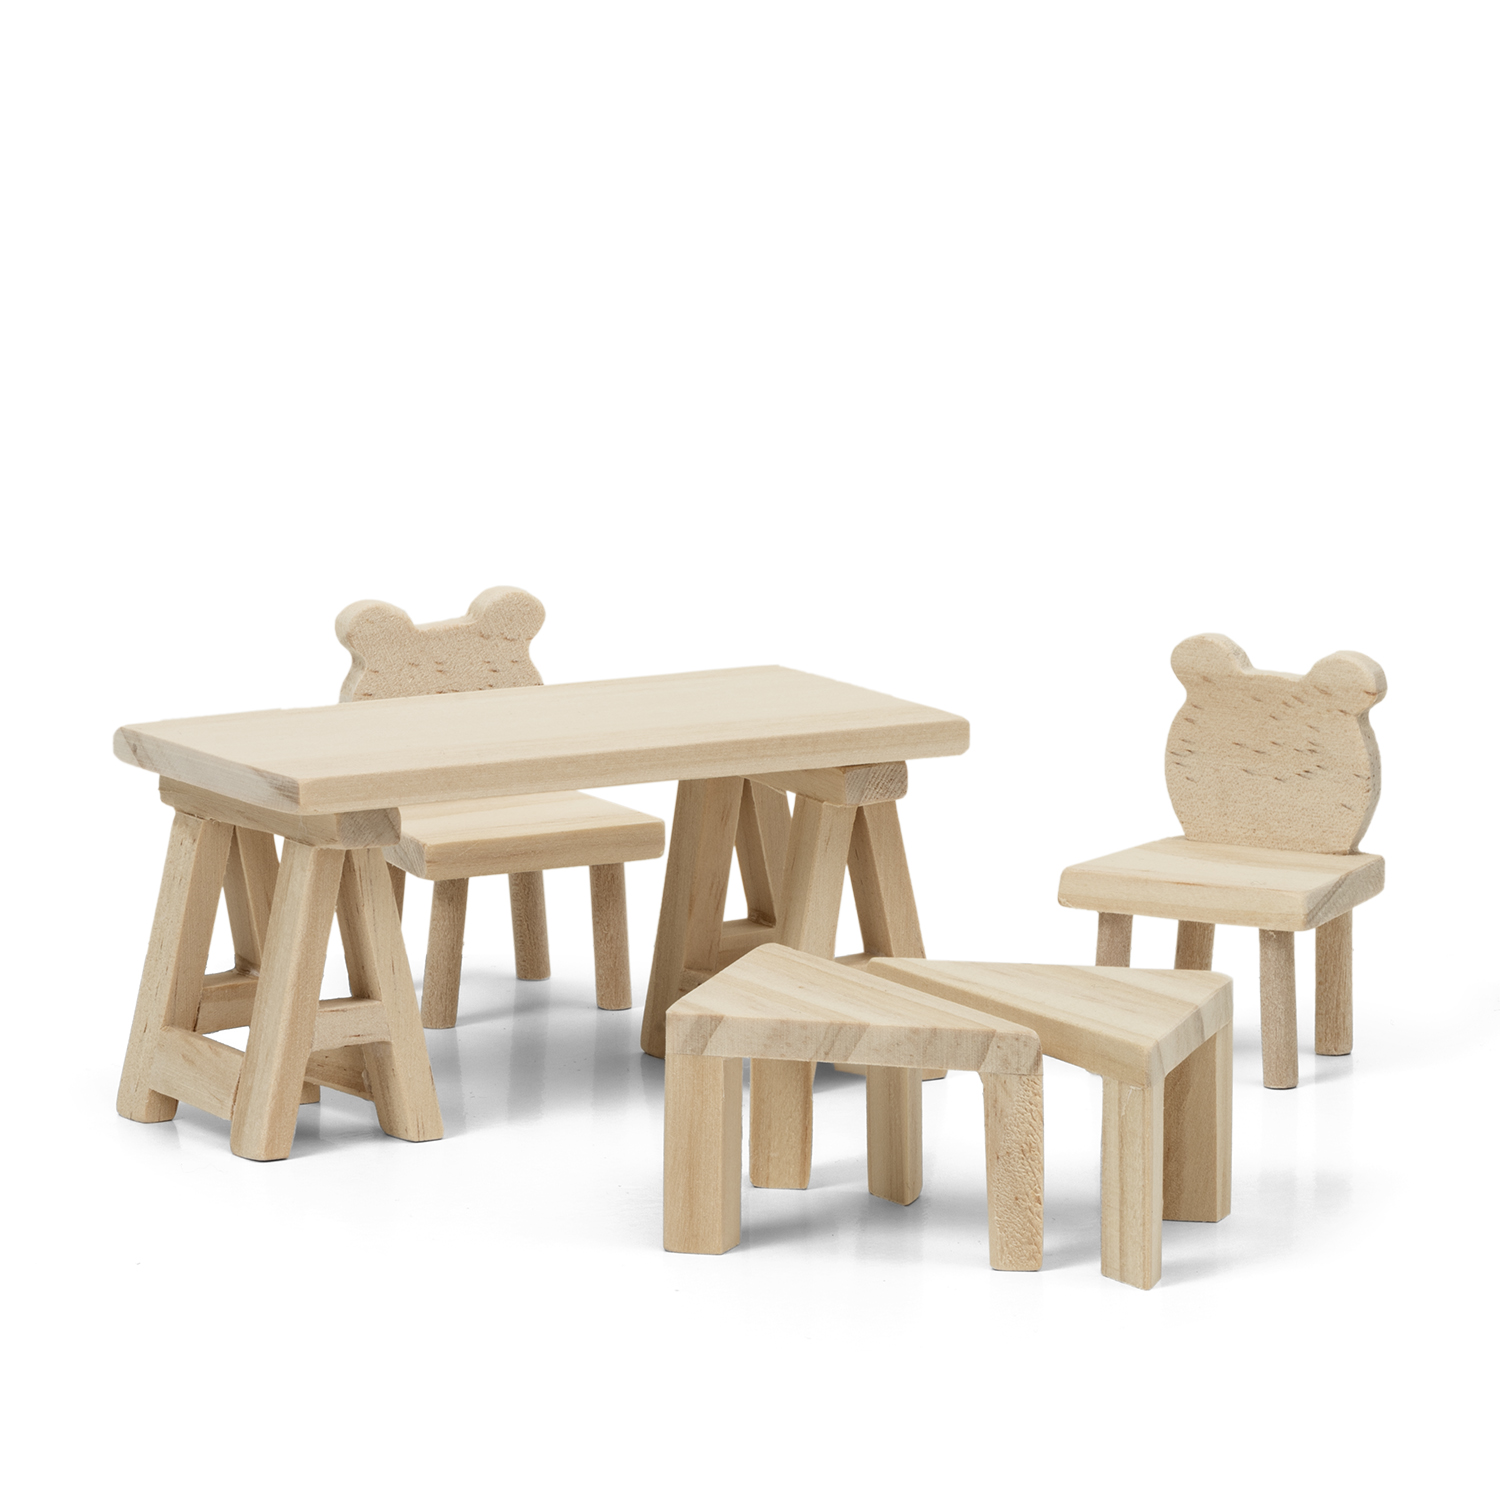 Outlet lundby dukkehusmøbler bord & stole træ